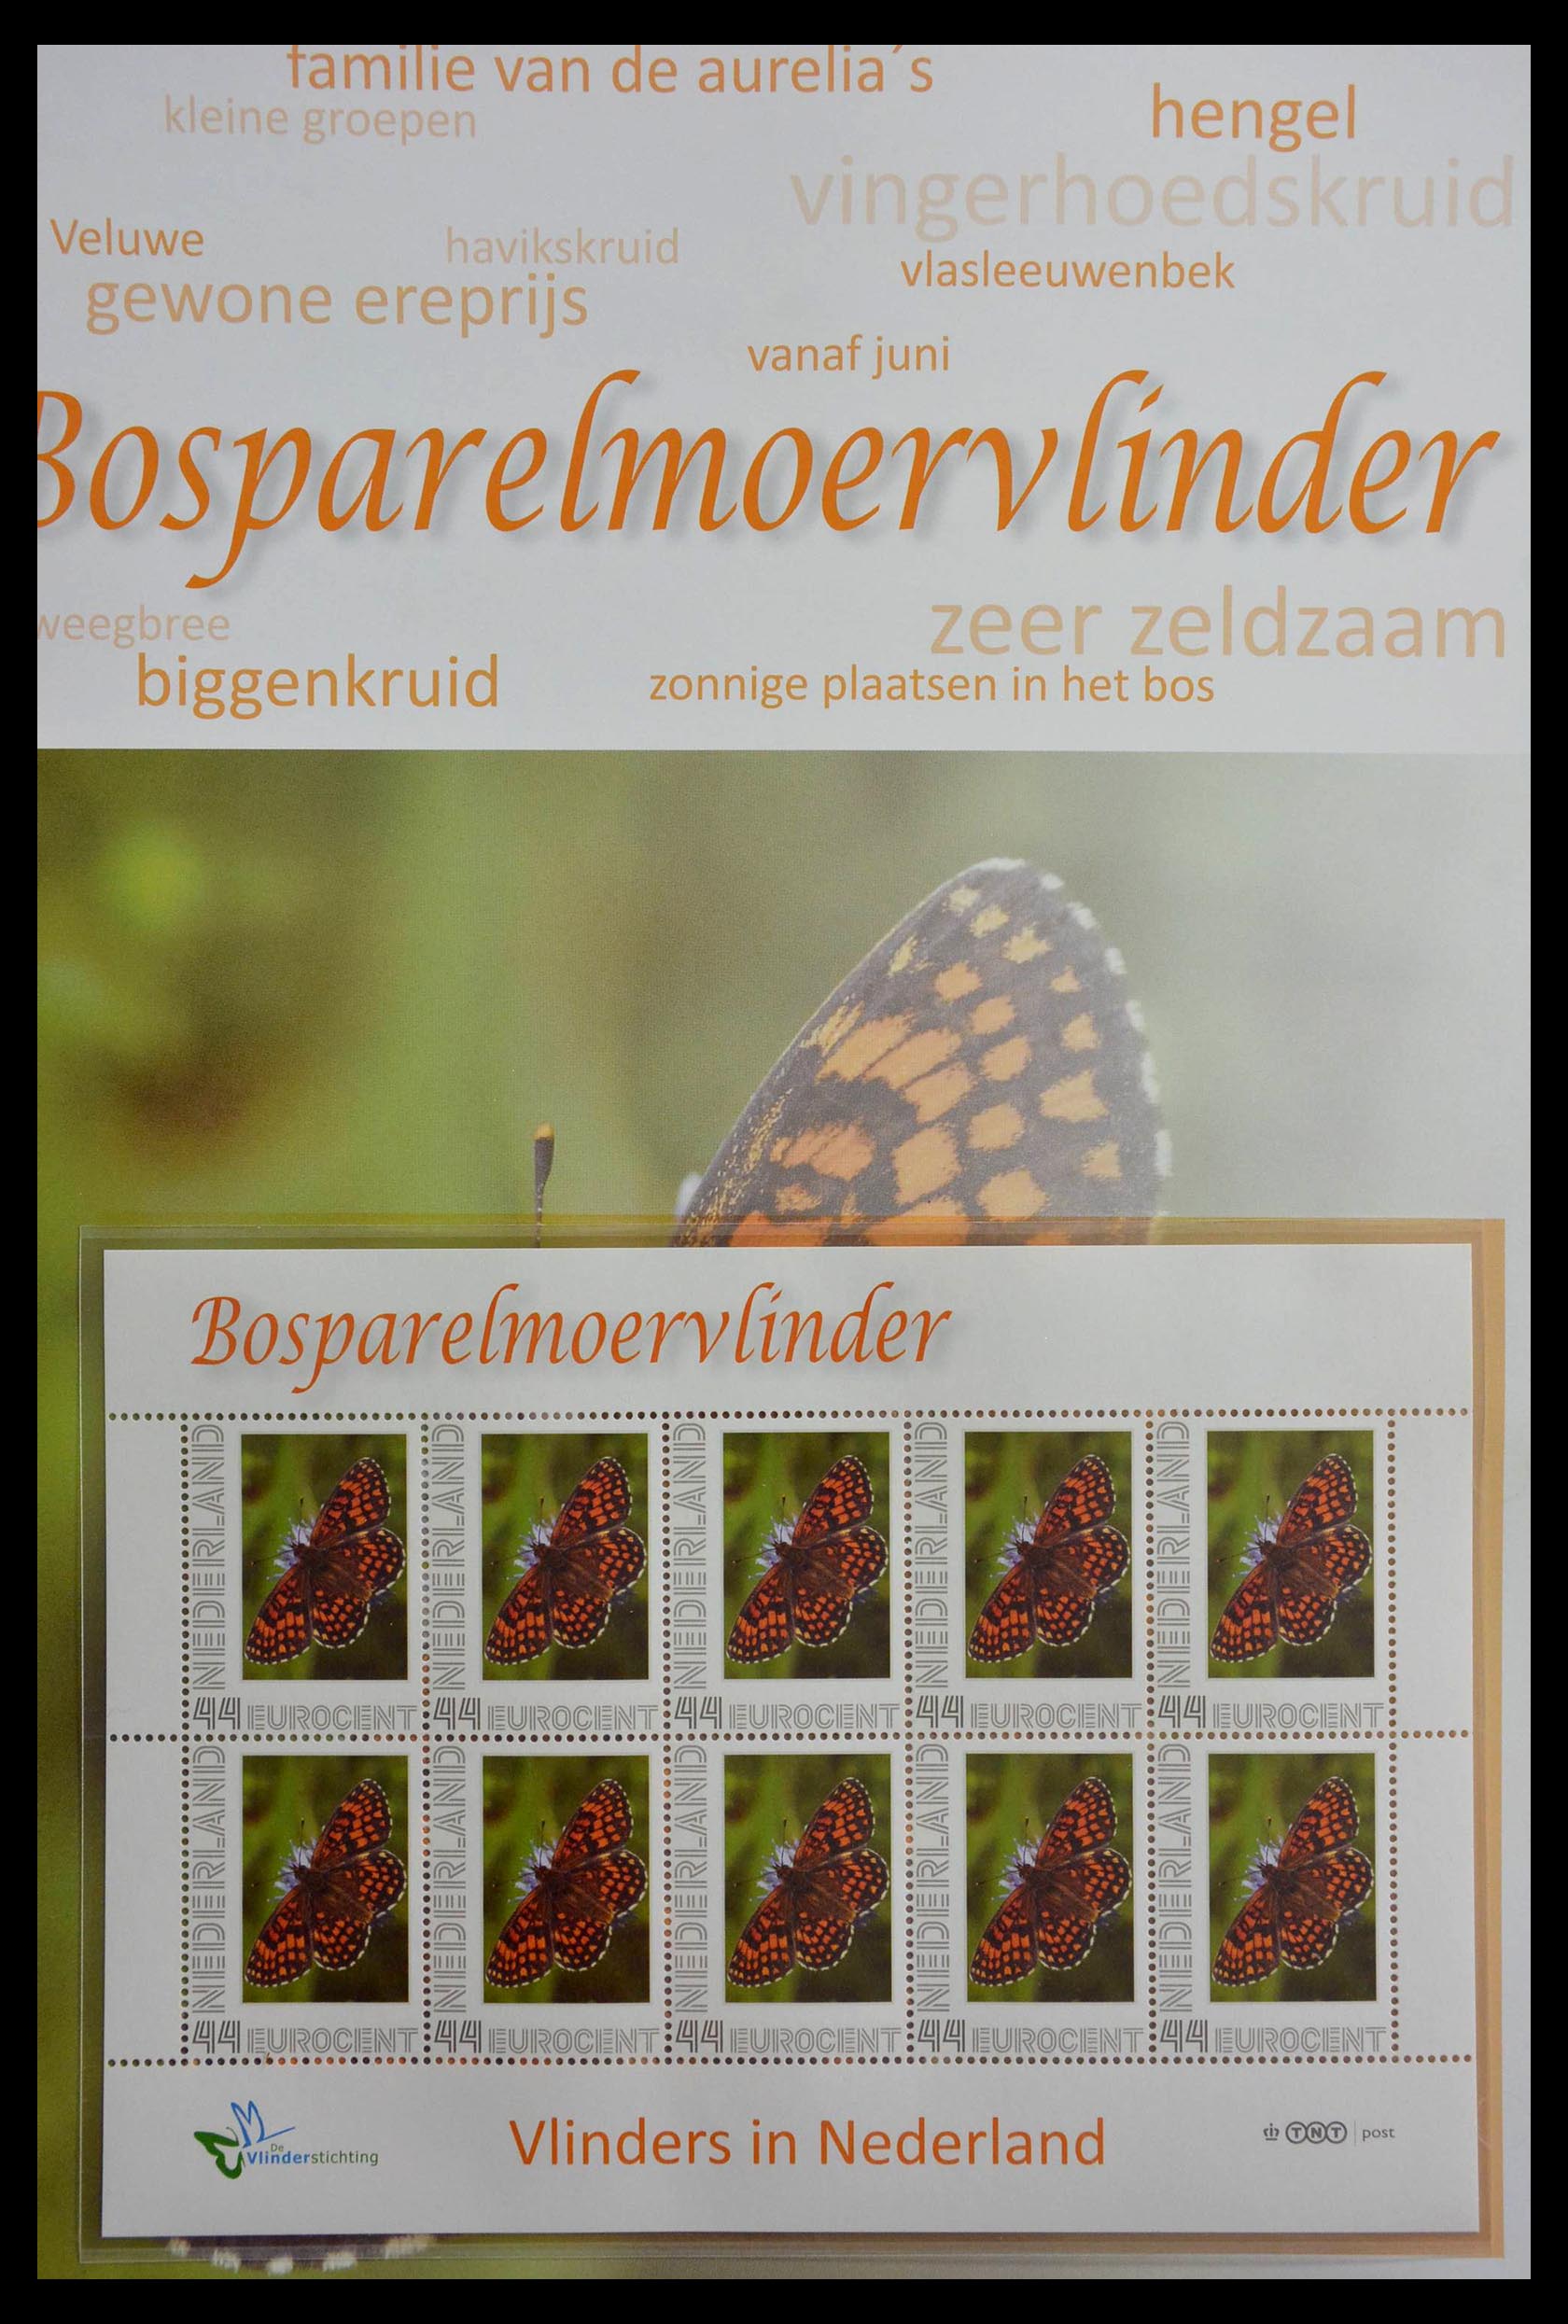 13105 002 - 13105 Vlinders in Nederland.